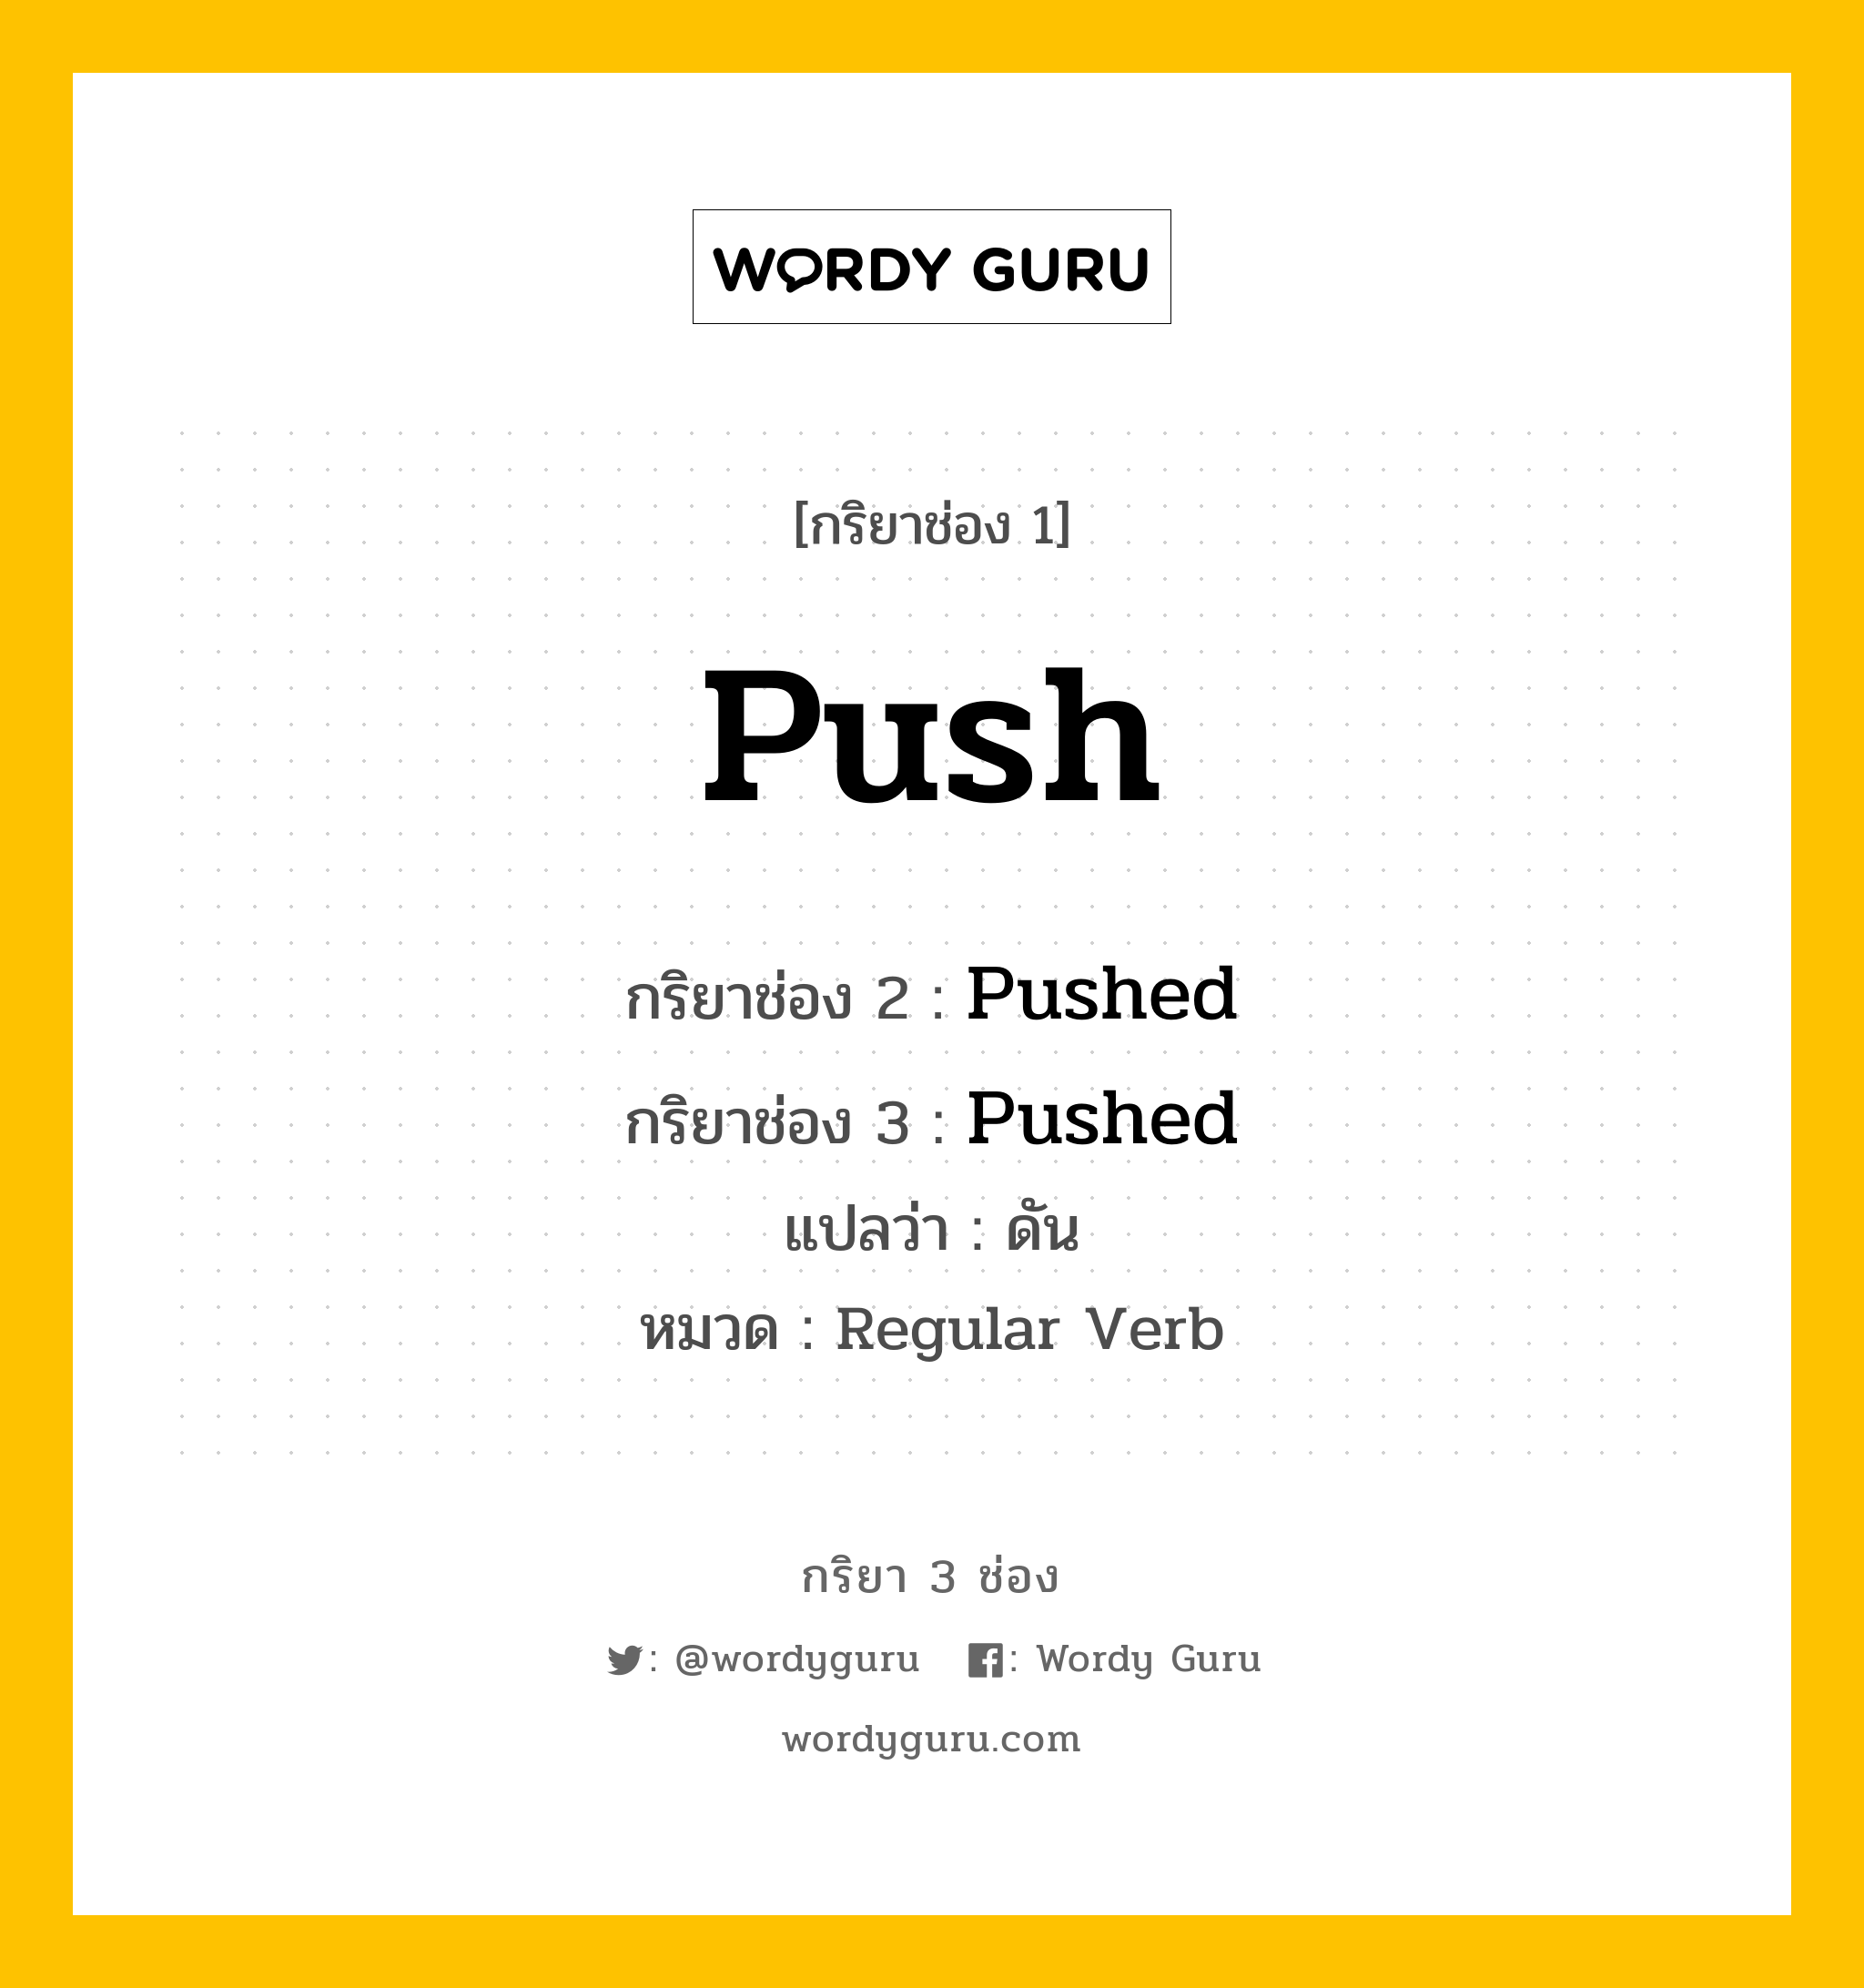 กริยา 3 ช่อง: Push ช่อง 2 Push ช่อง 3 คืออะไร, กริยาช่อง 1 Push กริยาช่อง 2 Pushed กริยาช่อง 3 Pushed แปลว่า ดัน หมวด Regular Verb หมวด Regular Verb